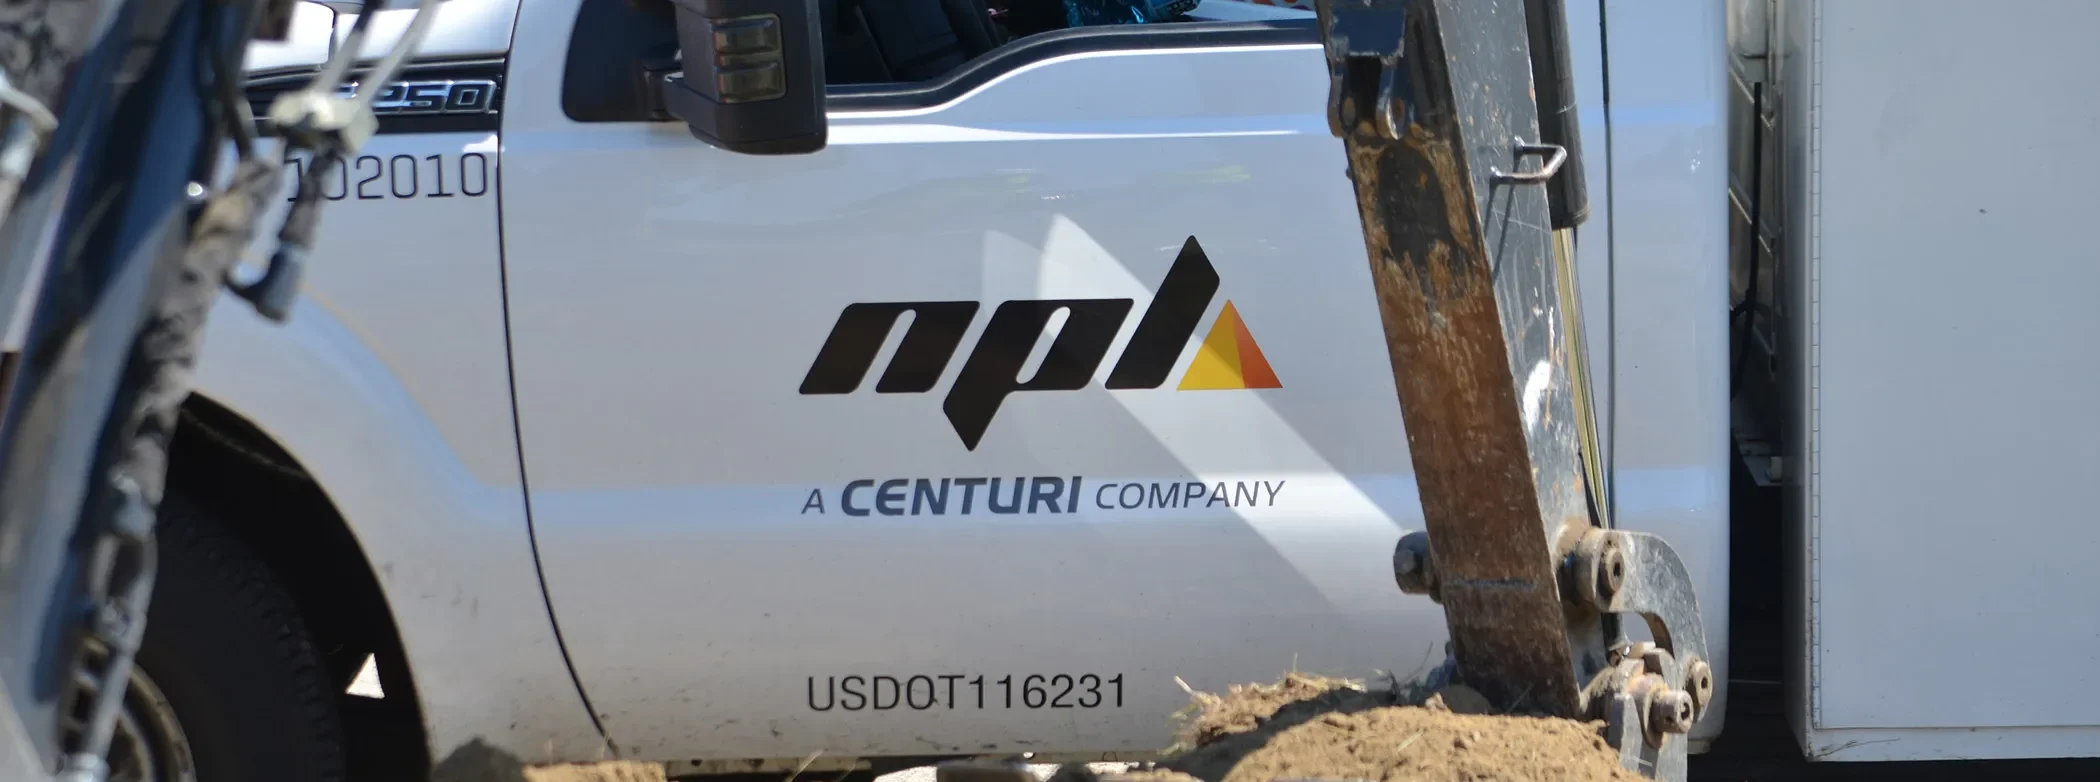 Npl logo on side of truck